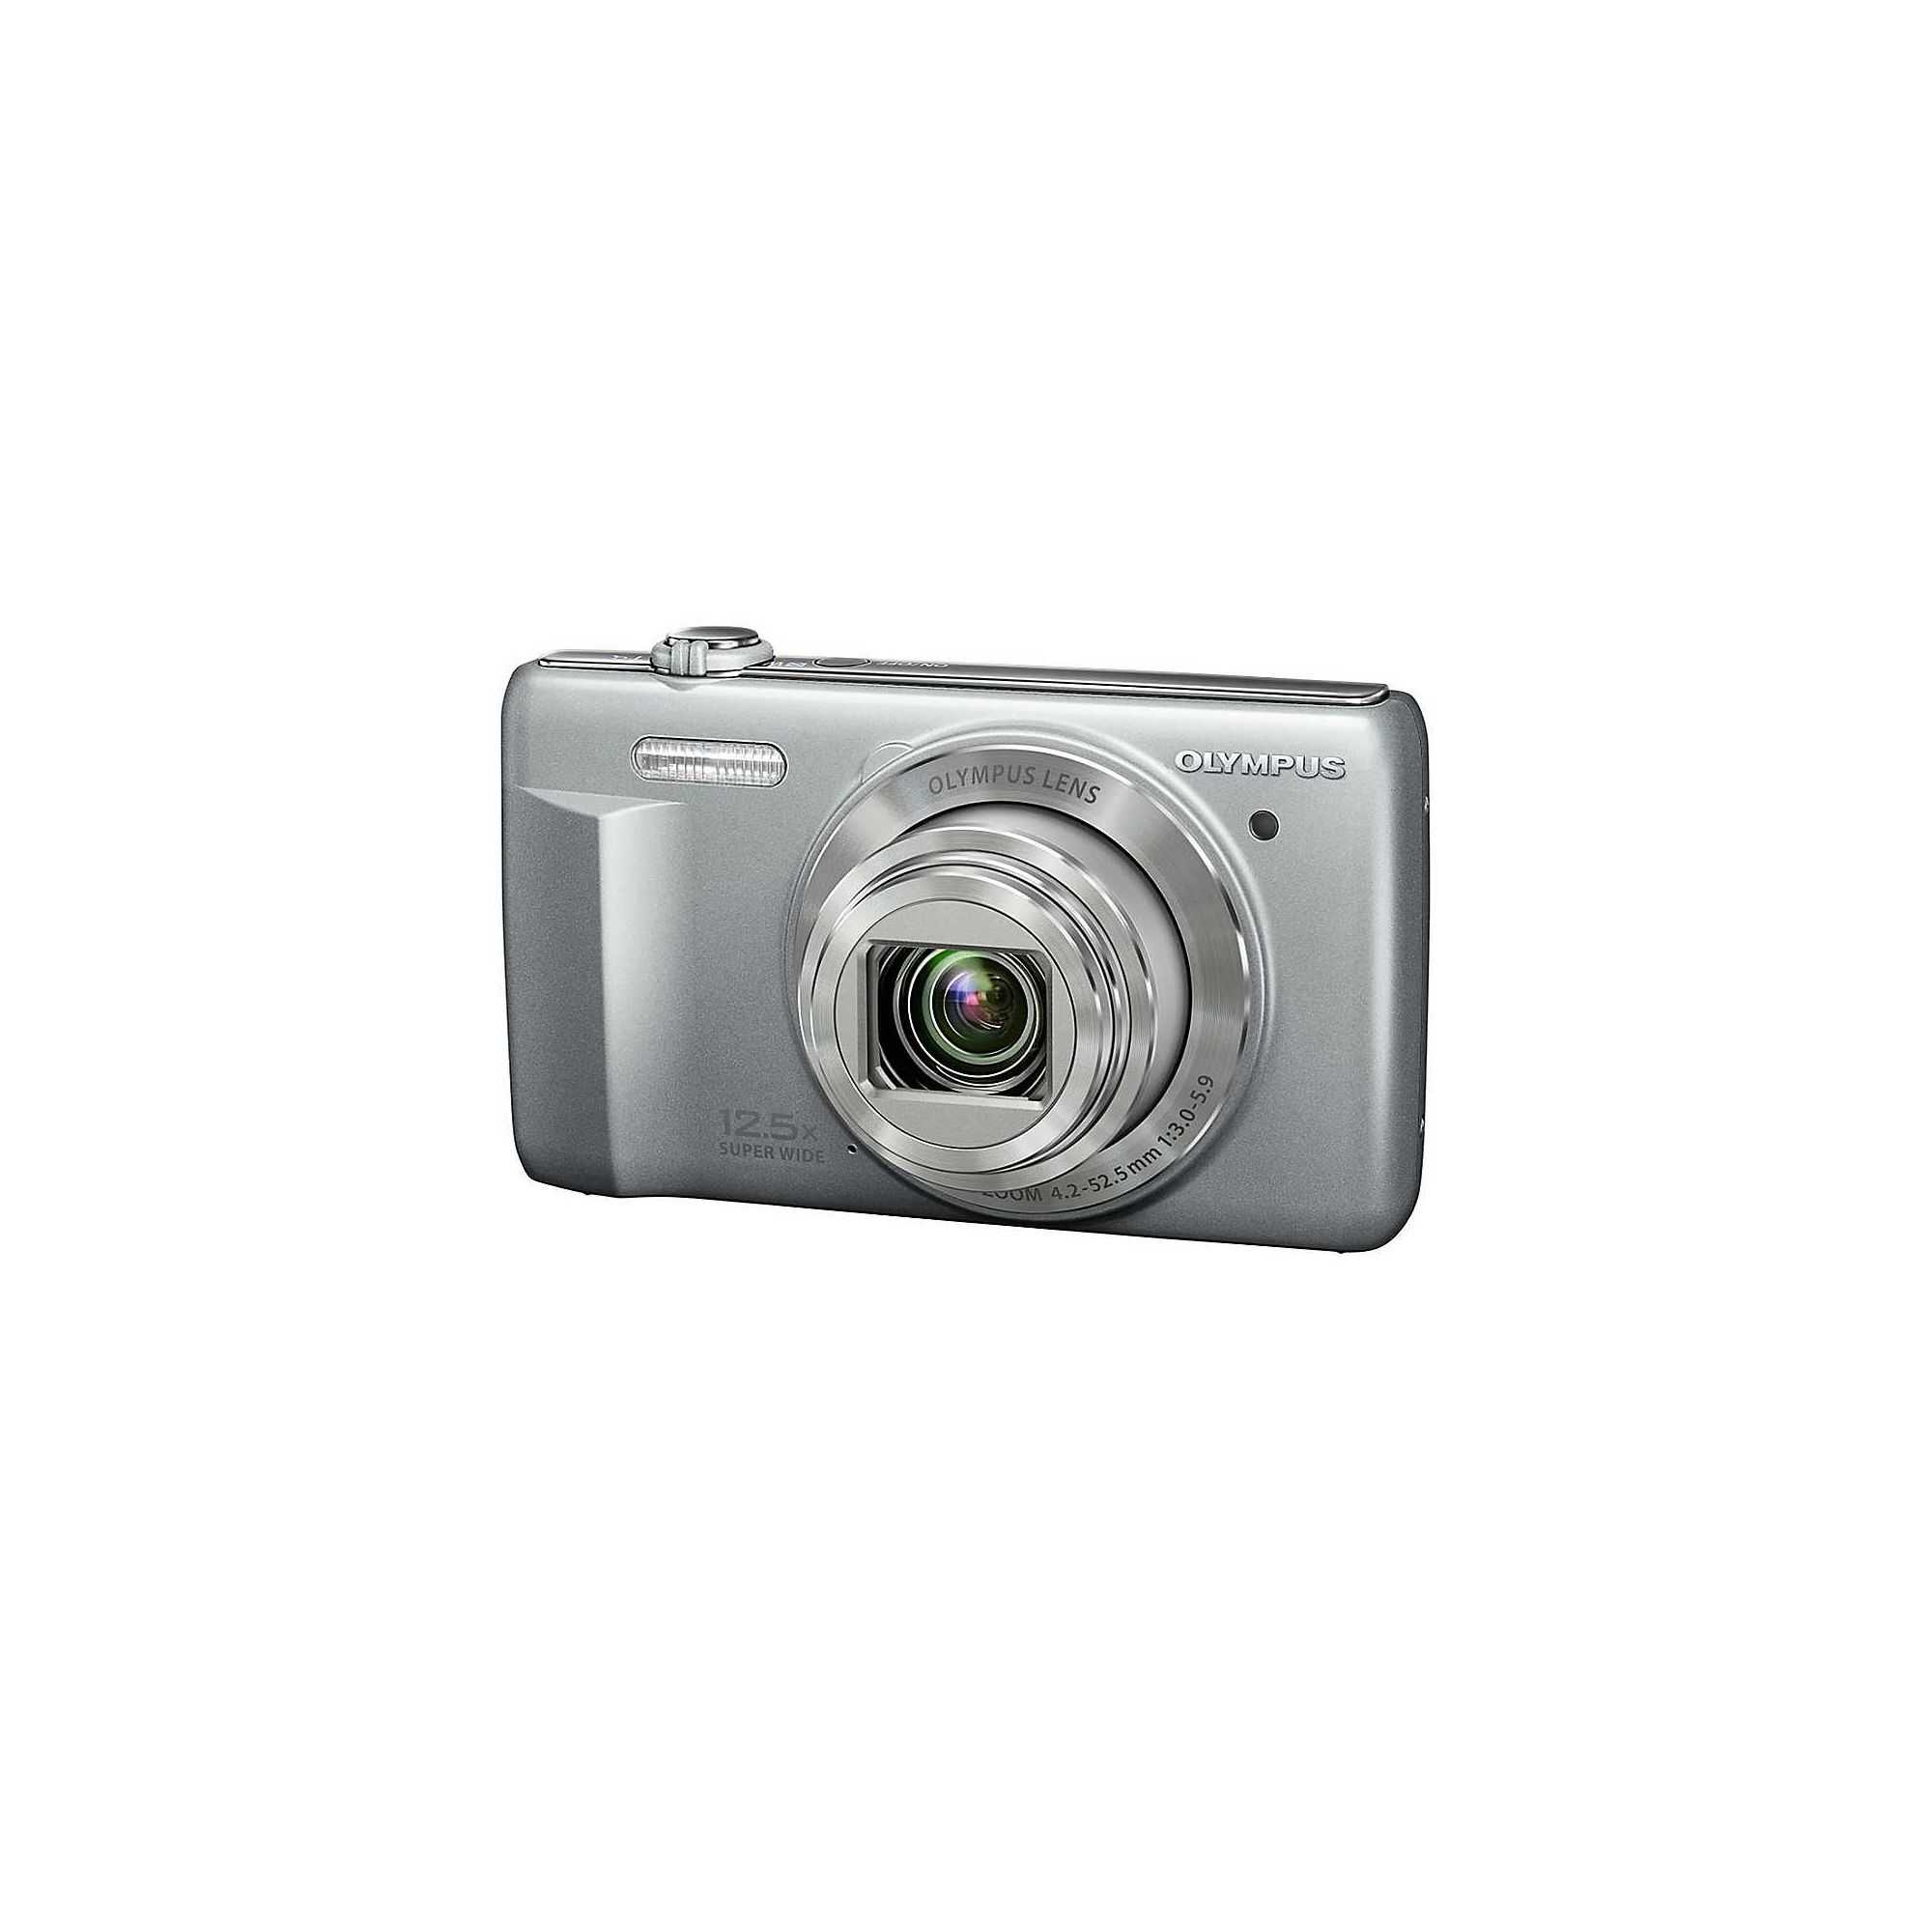 Olympus vr-370 (серебристый) - купить , скидки, цена, отзывы, обзор, характеристики - фотоаппараты цифровые